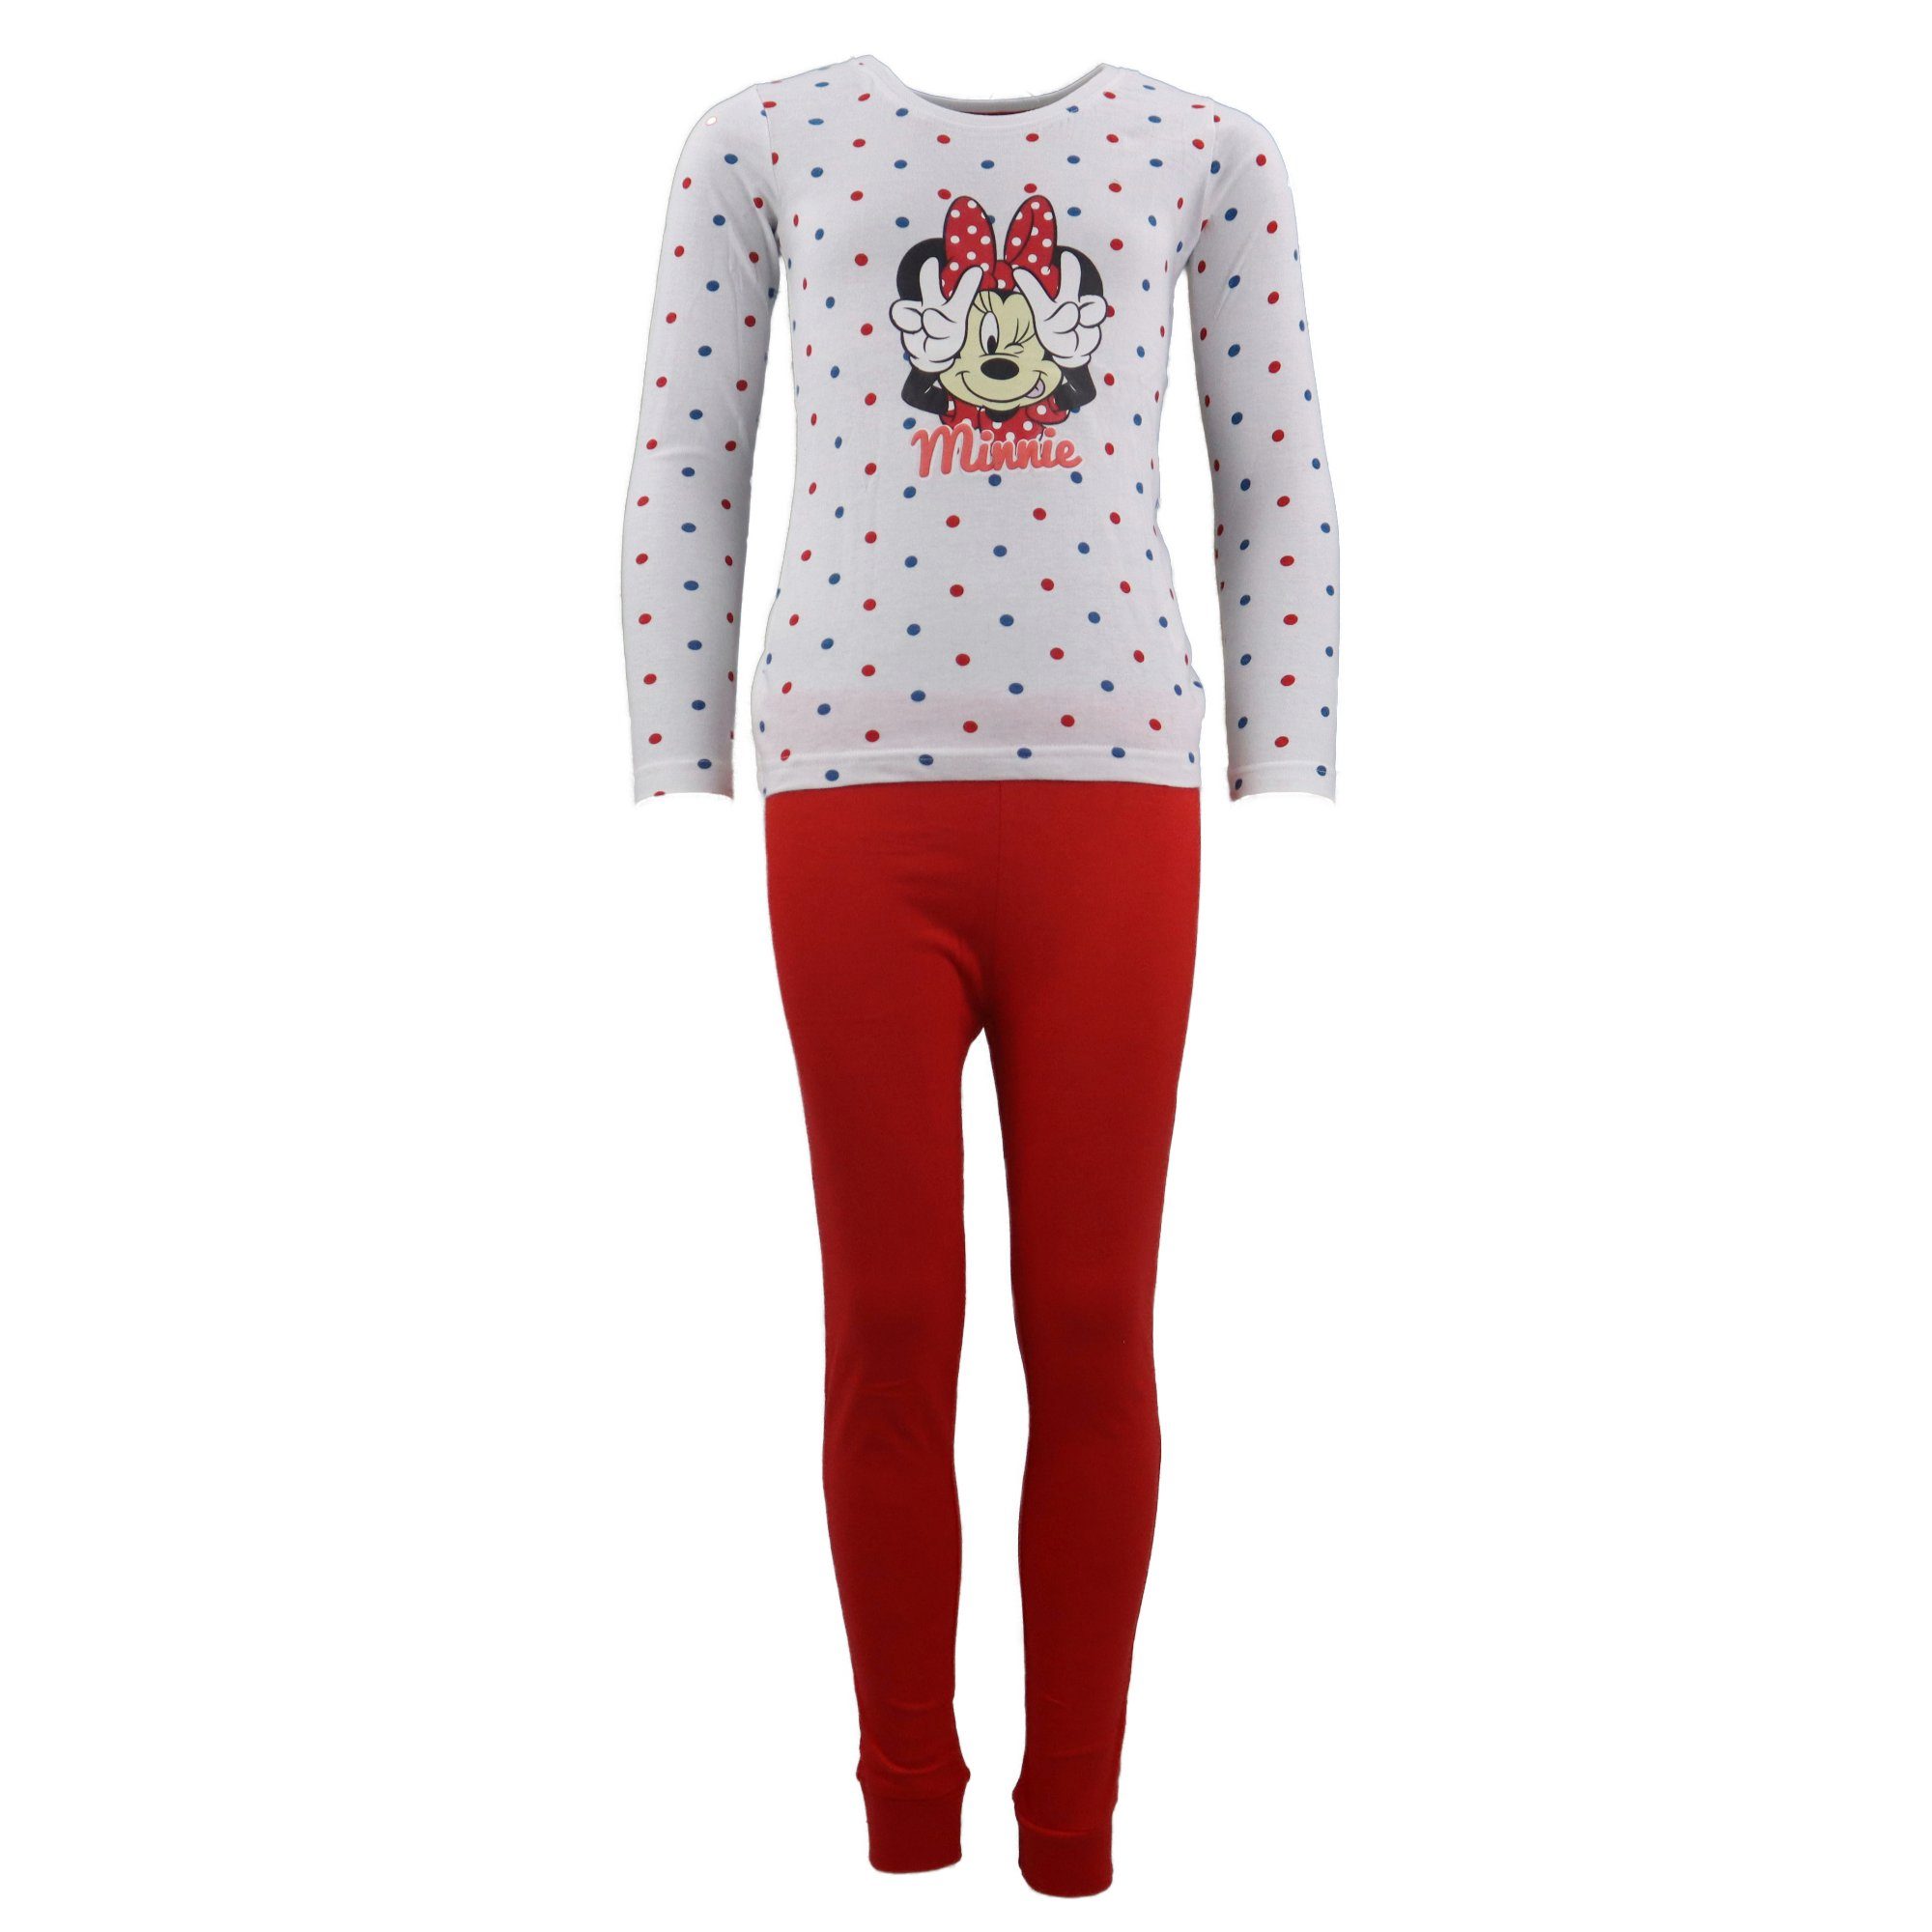 neueste Disney Minnie Mouse Schlafanzug Minnie 100% Gr. Mädchen Rot 128, Maus Baumwolle Pyjama Kinder bis 98